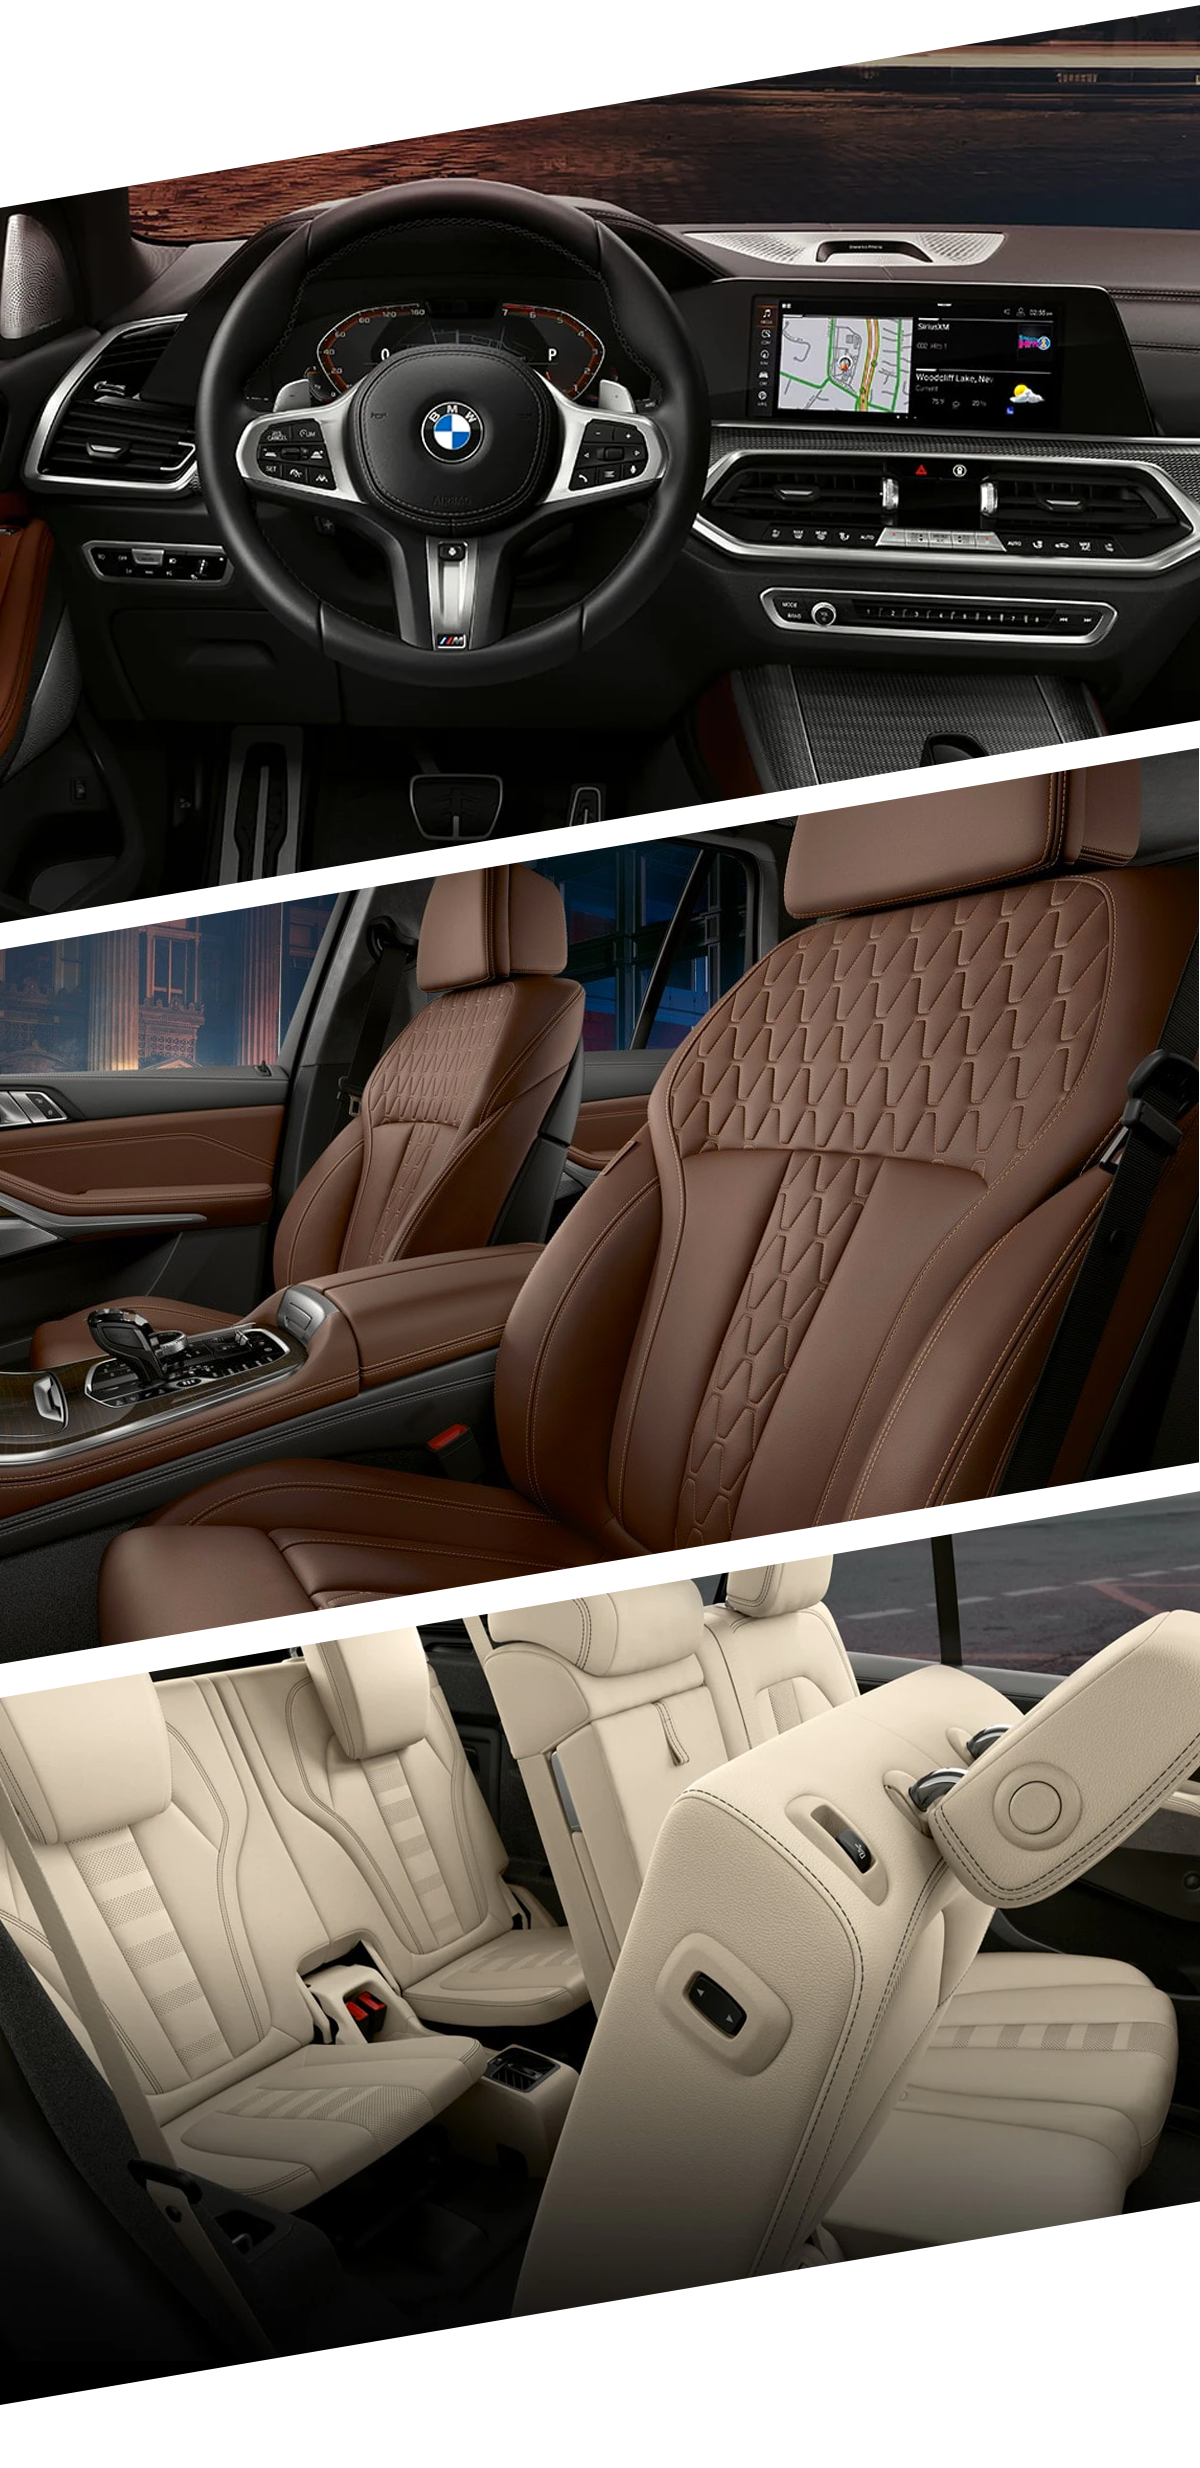 2021 BMW X5 Interior Images